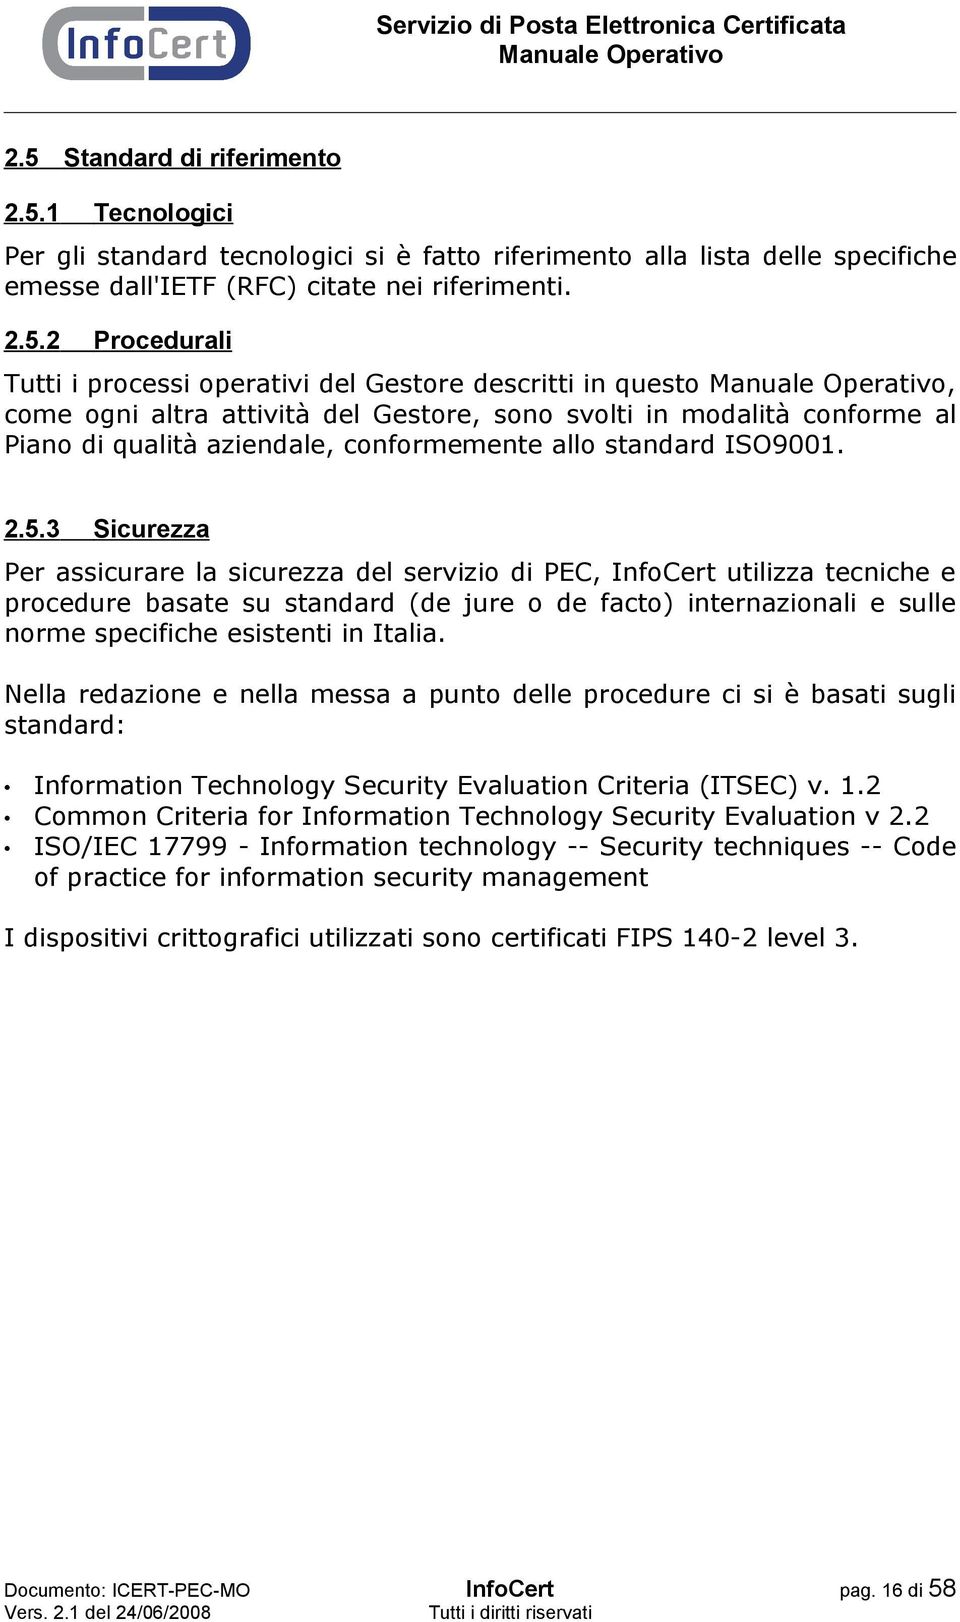 3 Sicurezza Per assicurare la sicurezza del servizio di PEC, InfoCert utilizza tecniche e procedure basate su standard (de jure o de facto) internazionali e sulle norme specifiche esistenti in Italia.